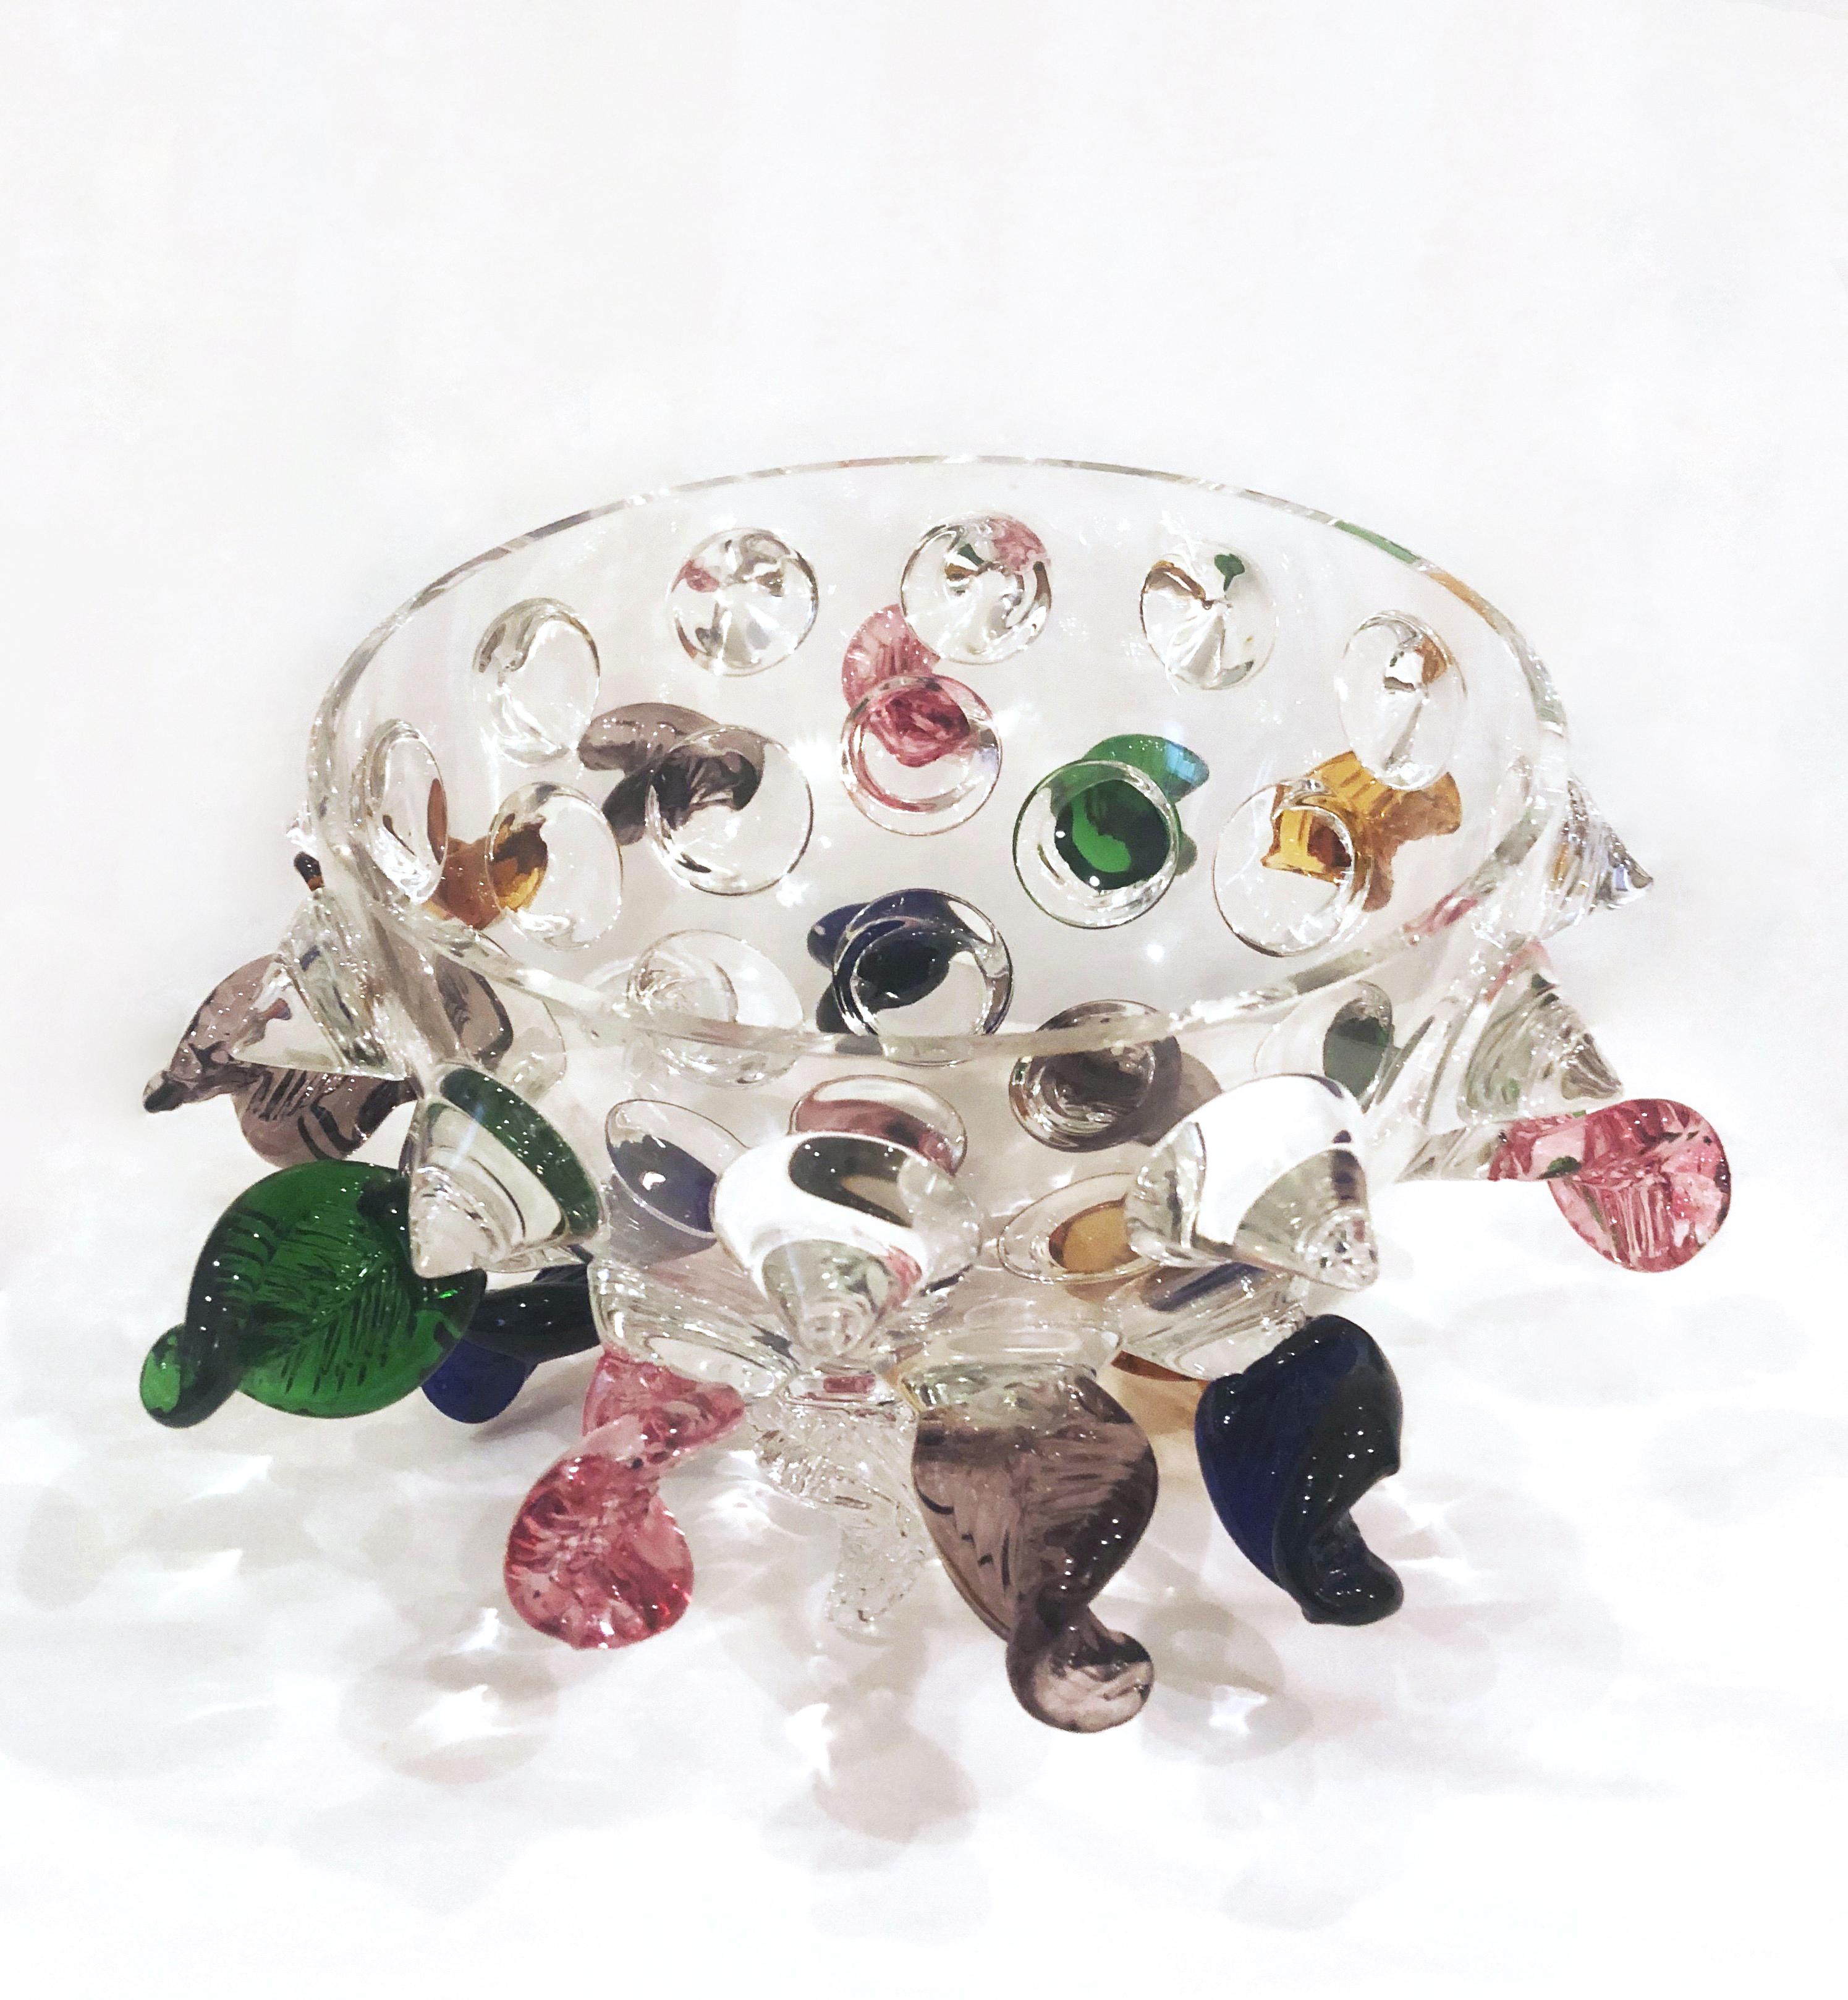 Runde Glasschale / Tafelaufsatz, 1991 von Borek Sipek für die italienische Firma Driade entworfen, mit farbigem und klarem Glas, dekorativen Blättern an den Seiten und 12 dreieckigen Formen aus klarem Glas am oberen Rand. Der Durchmesser der